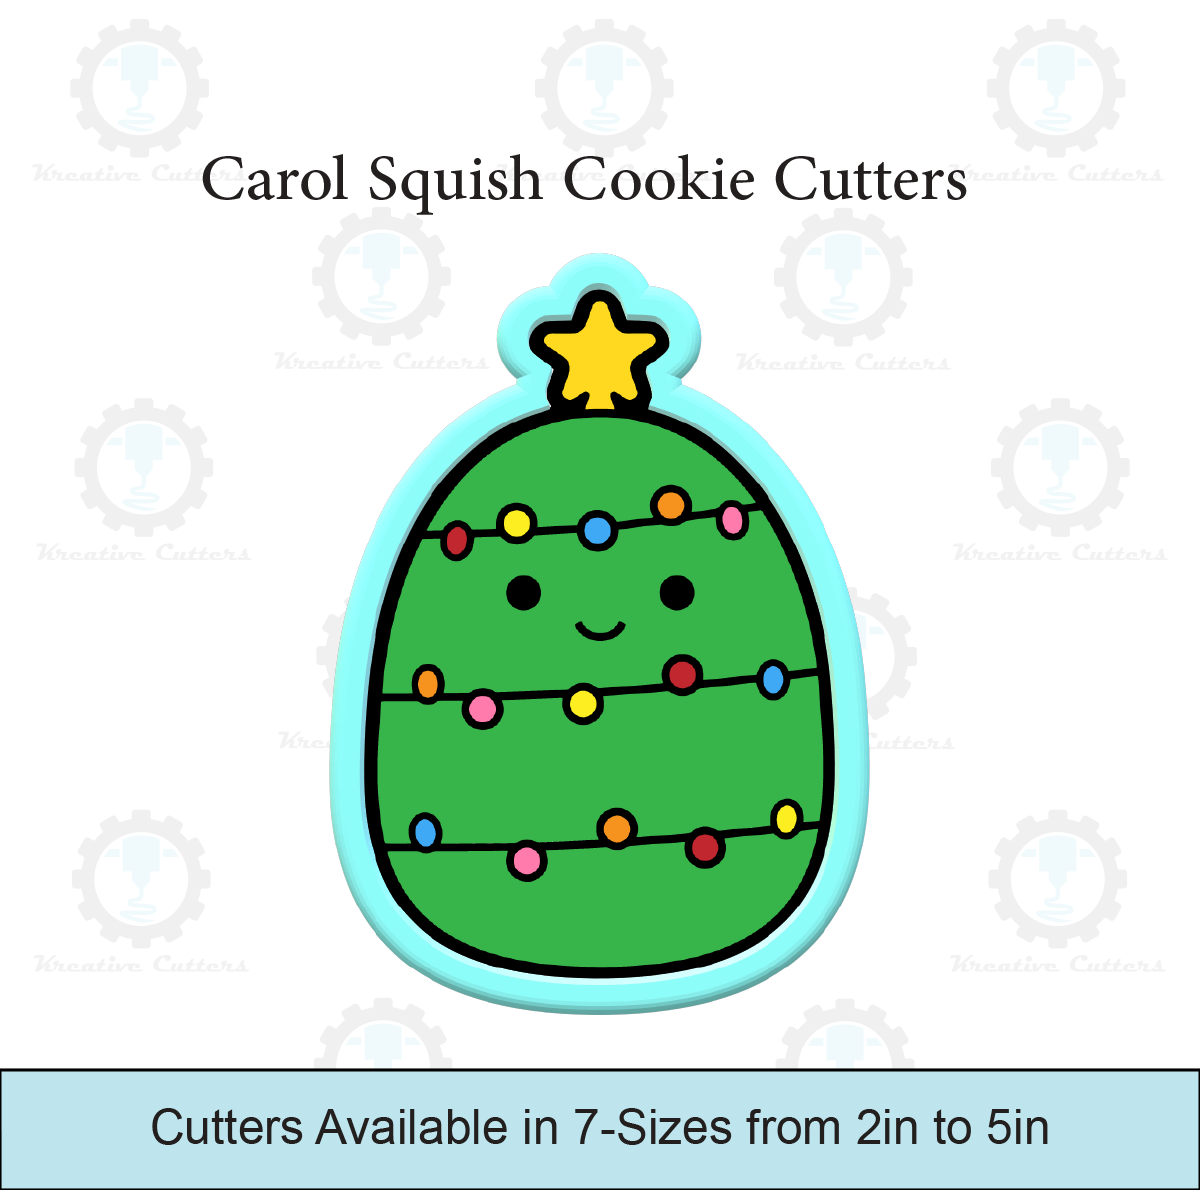 Carol Squish Cookie Cutters